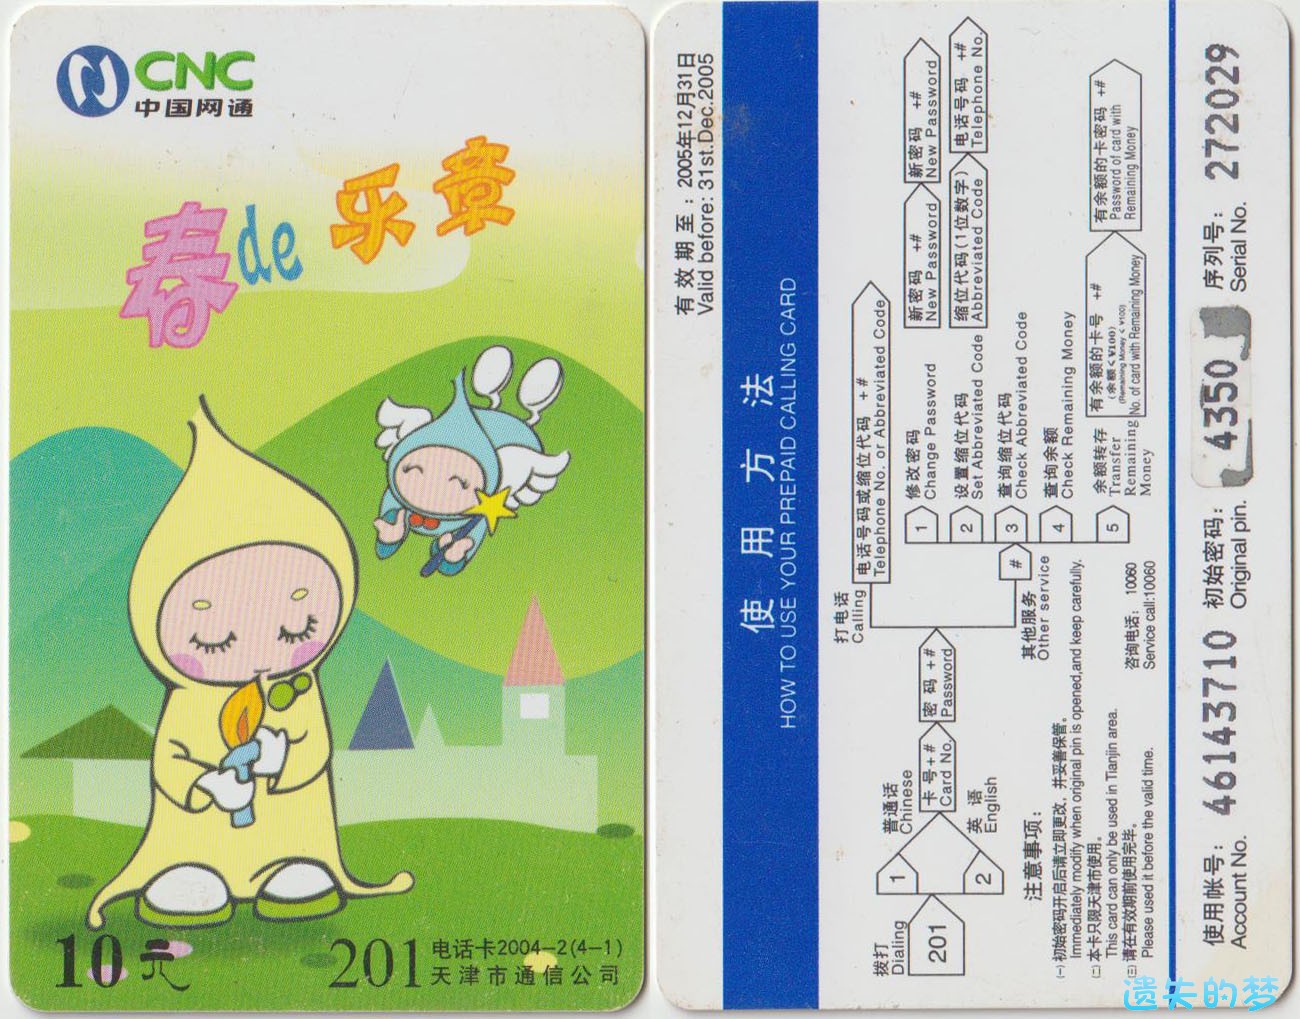 201电话卡2004-2(4-1).jpg